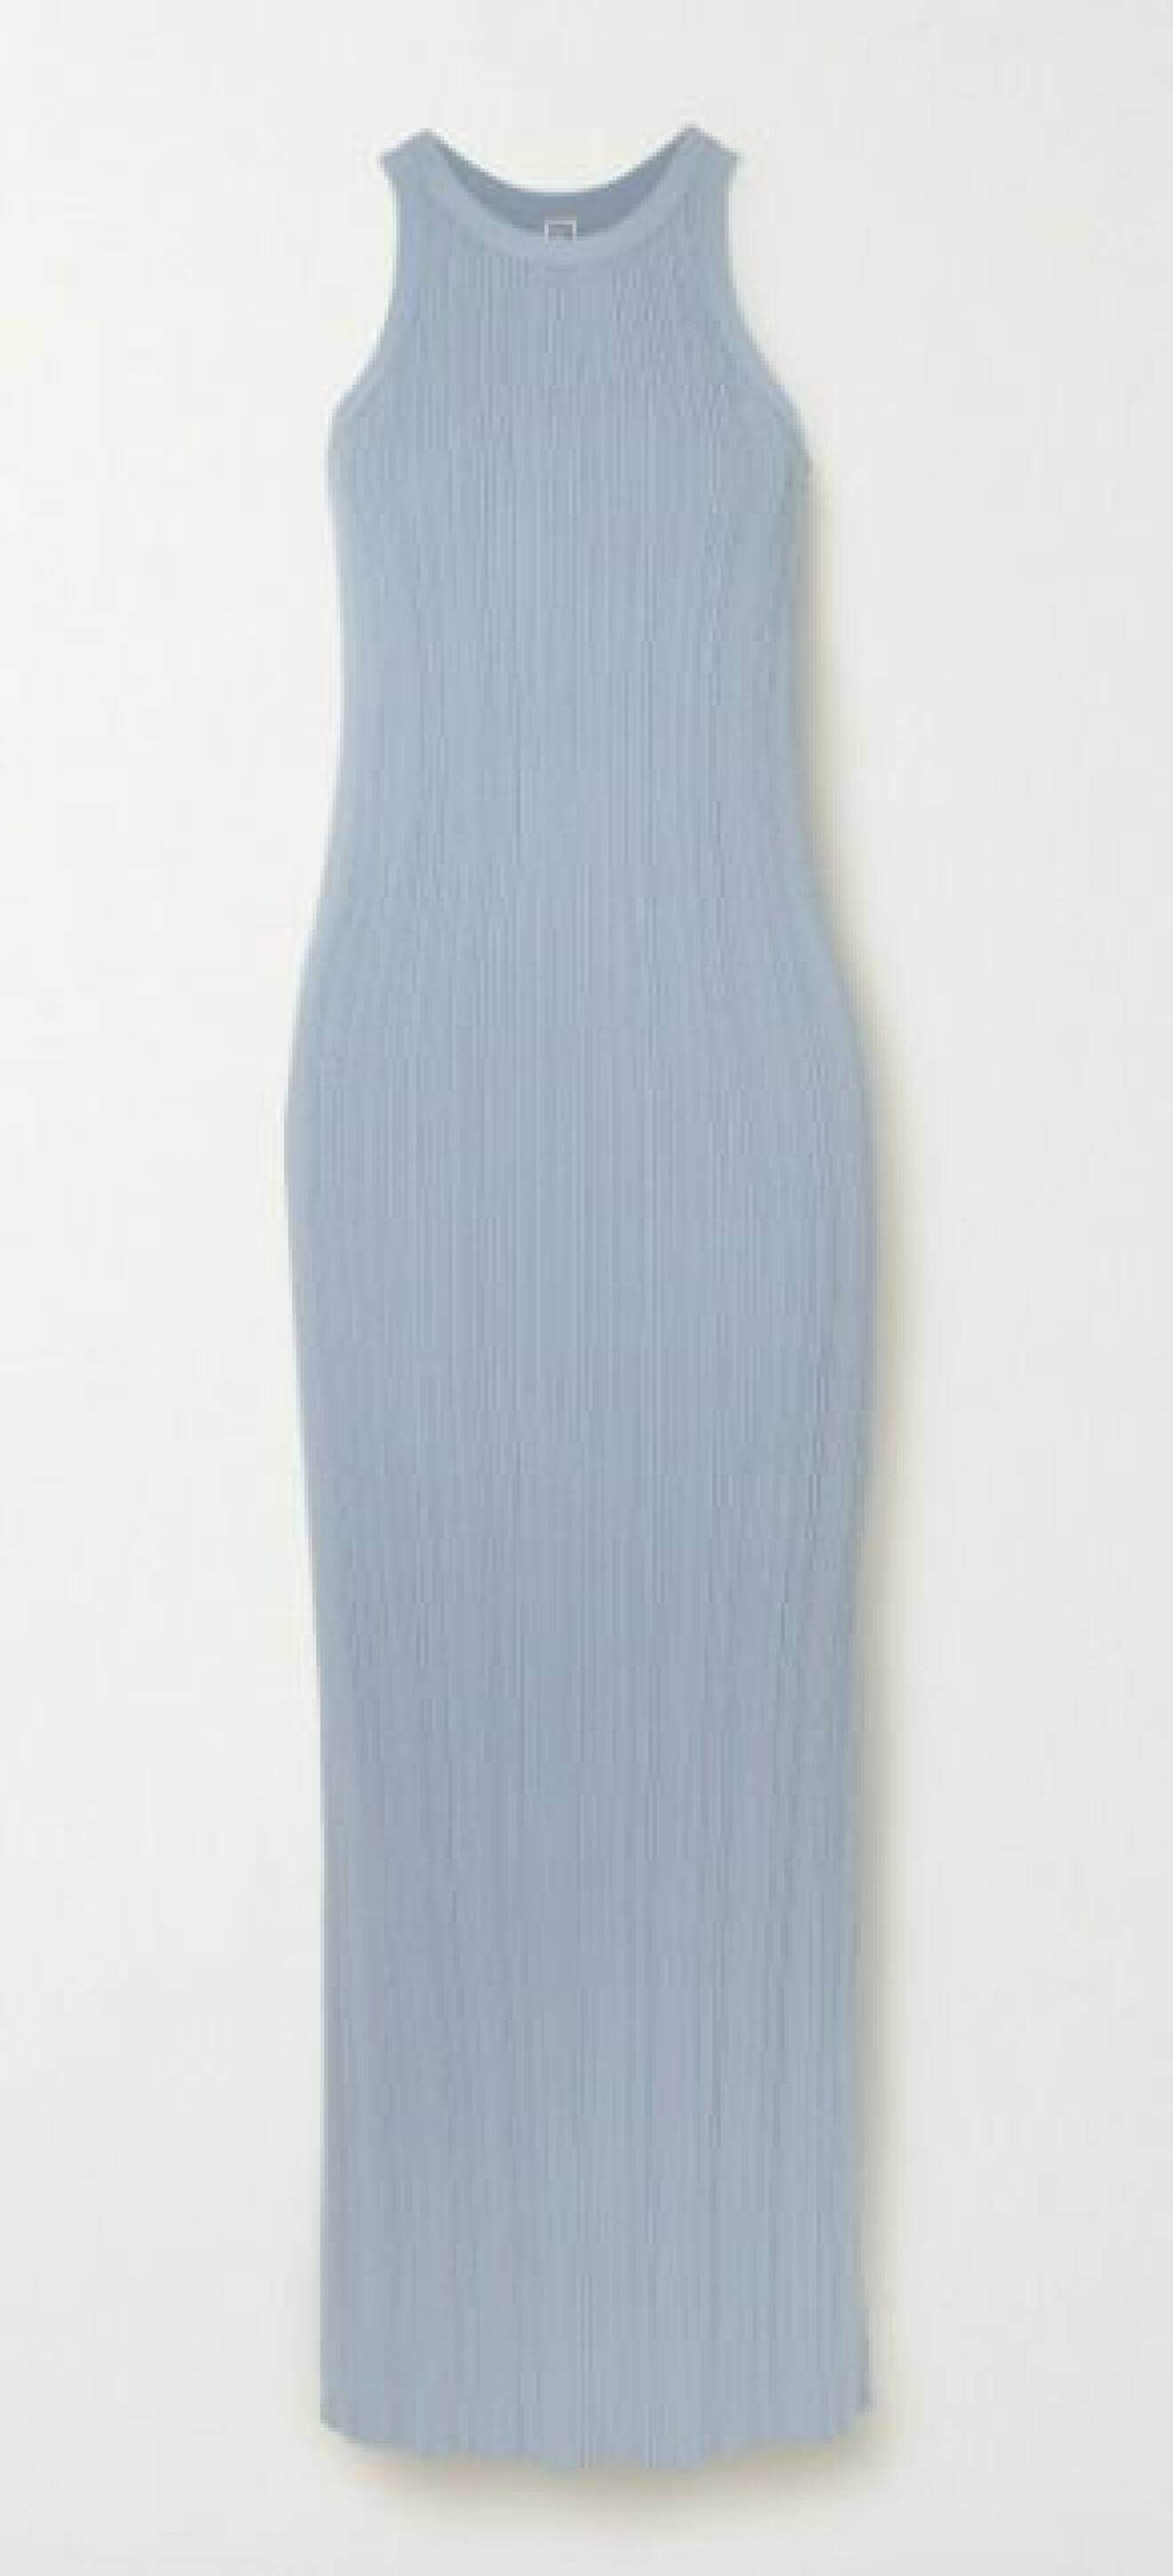 Ljusblå, ribbad klänning utan ärmar. Ribbstickad klänning från Toteme.